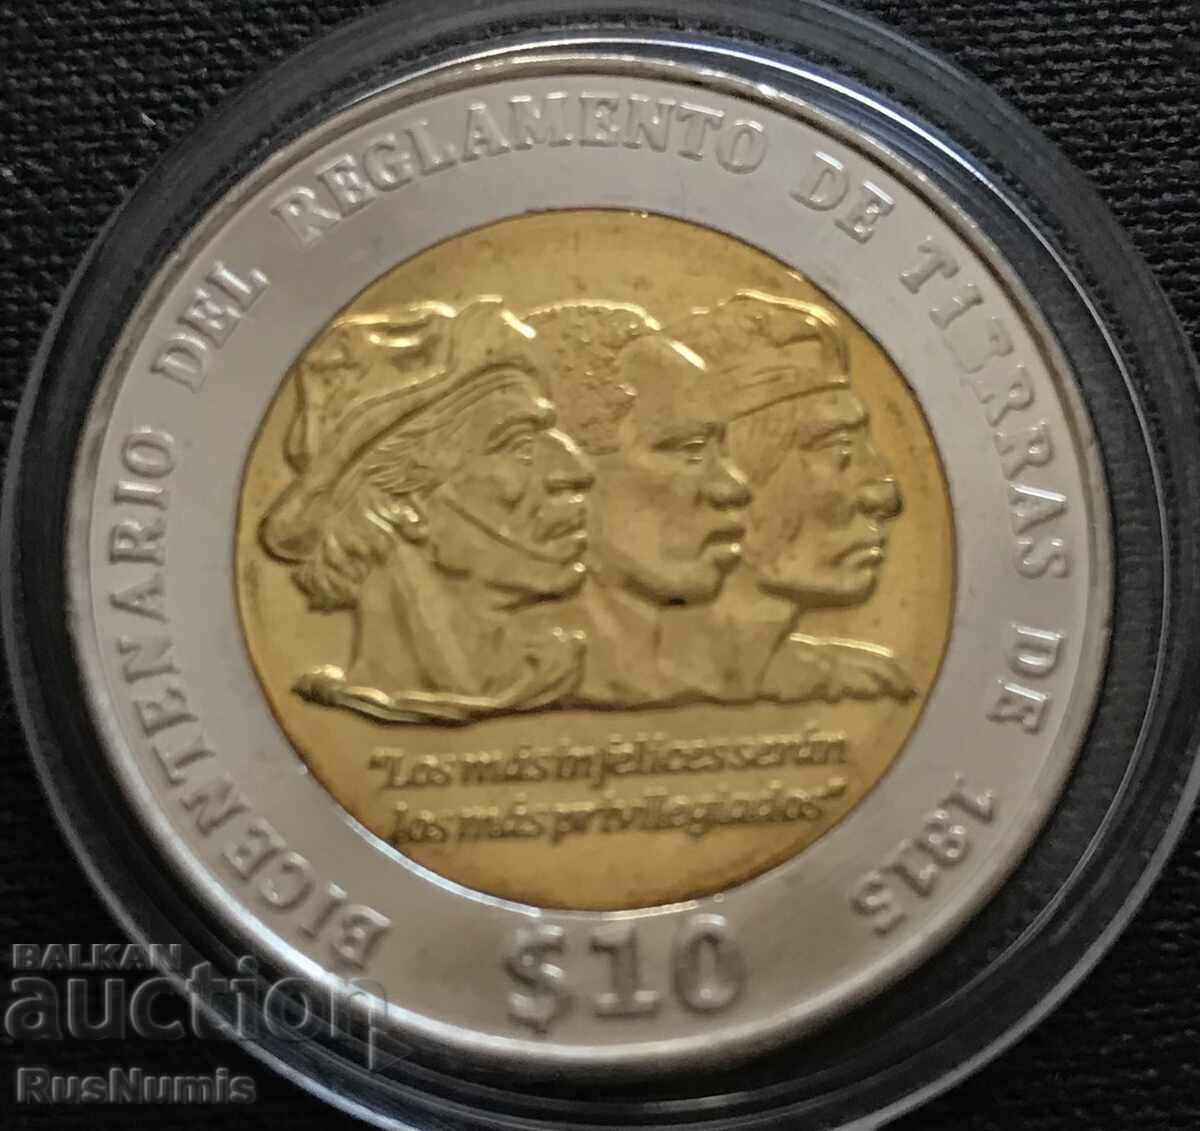 Uruguay. 10 pesos 2015 Ordonanța funciară 1815 UNC.